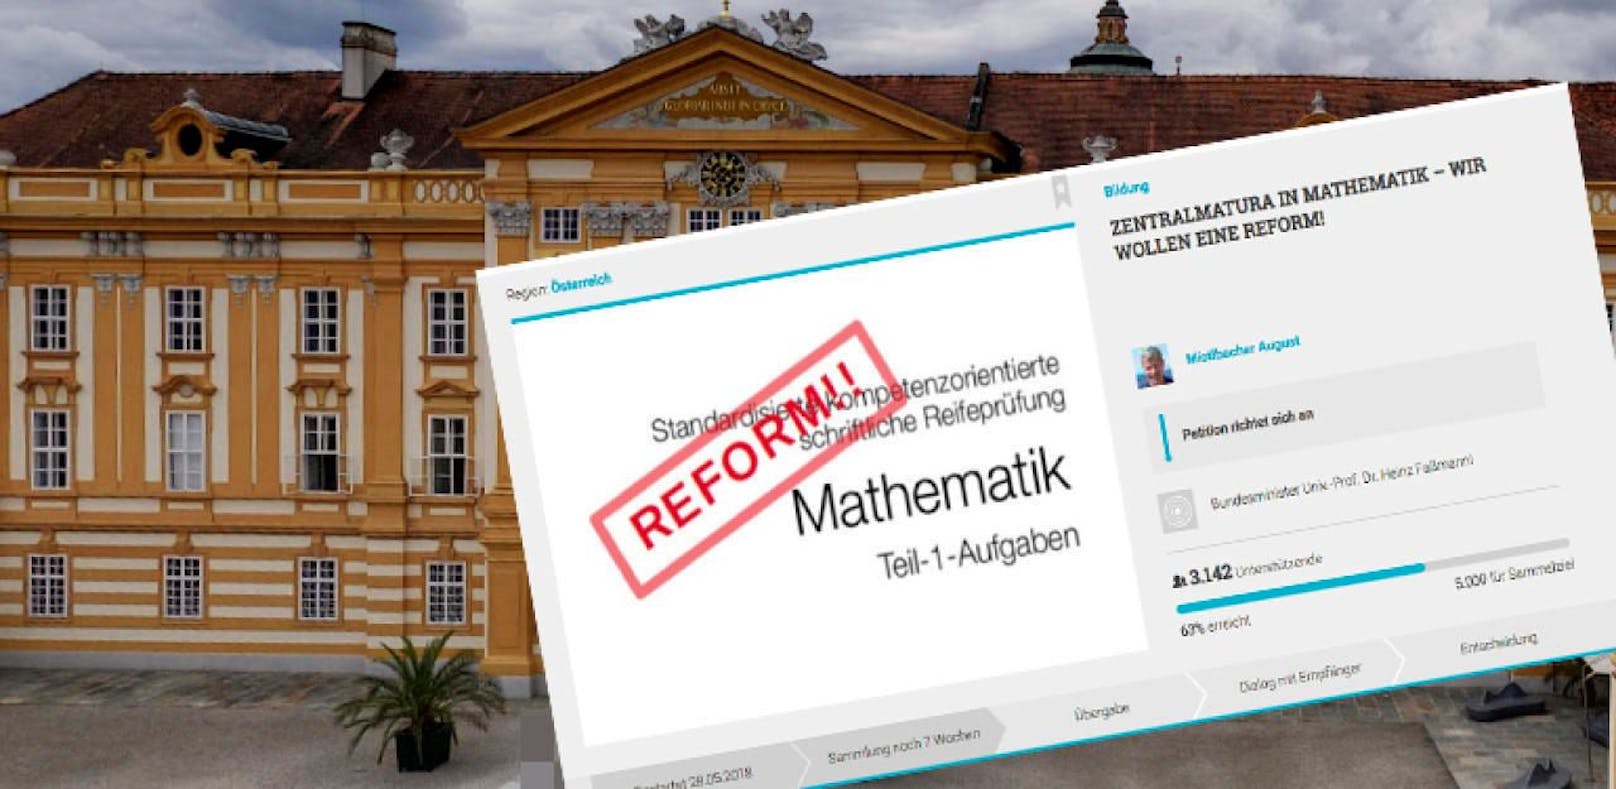 Die Online-Petition der Mathe-Lehrer aus dem Stiftsgymnasium Melk